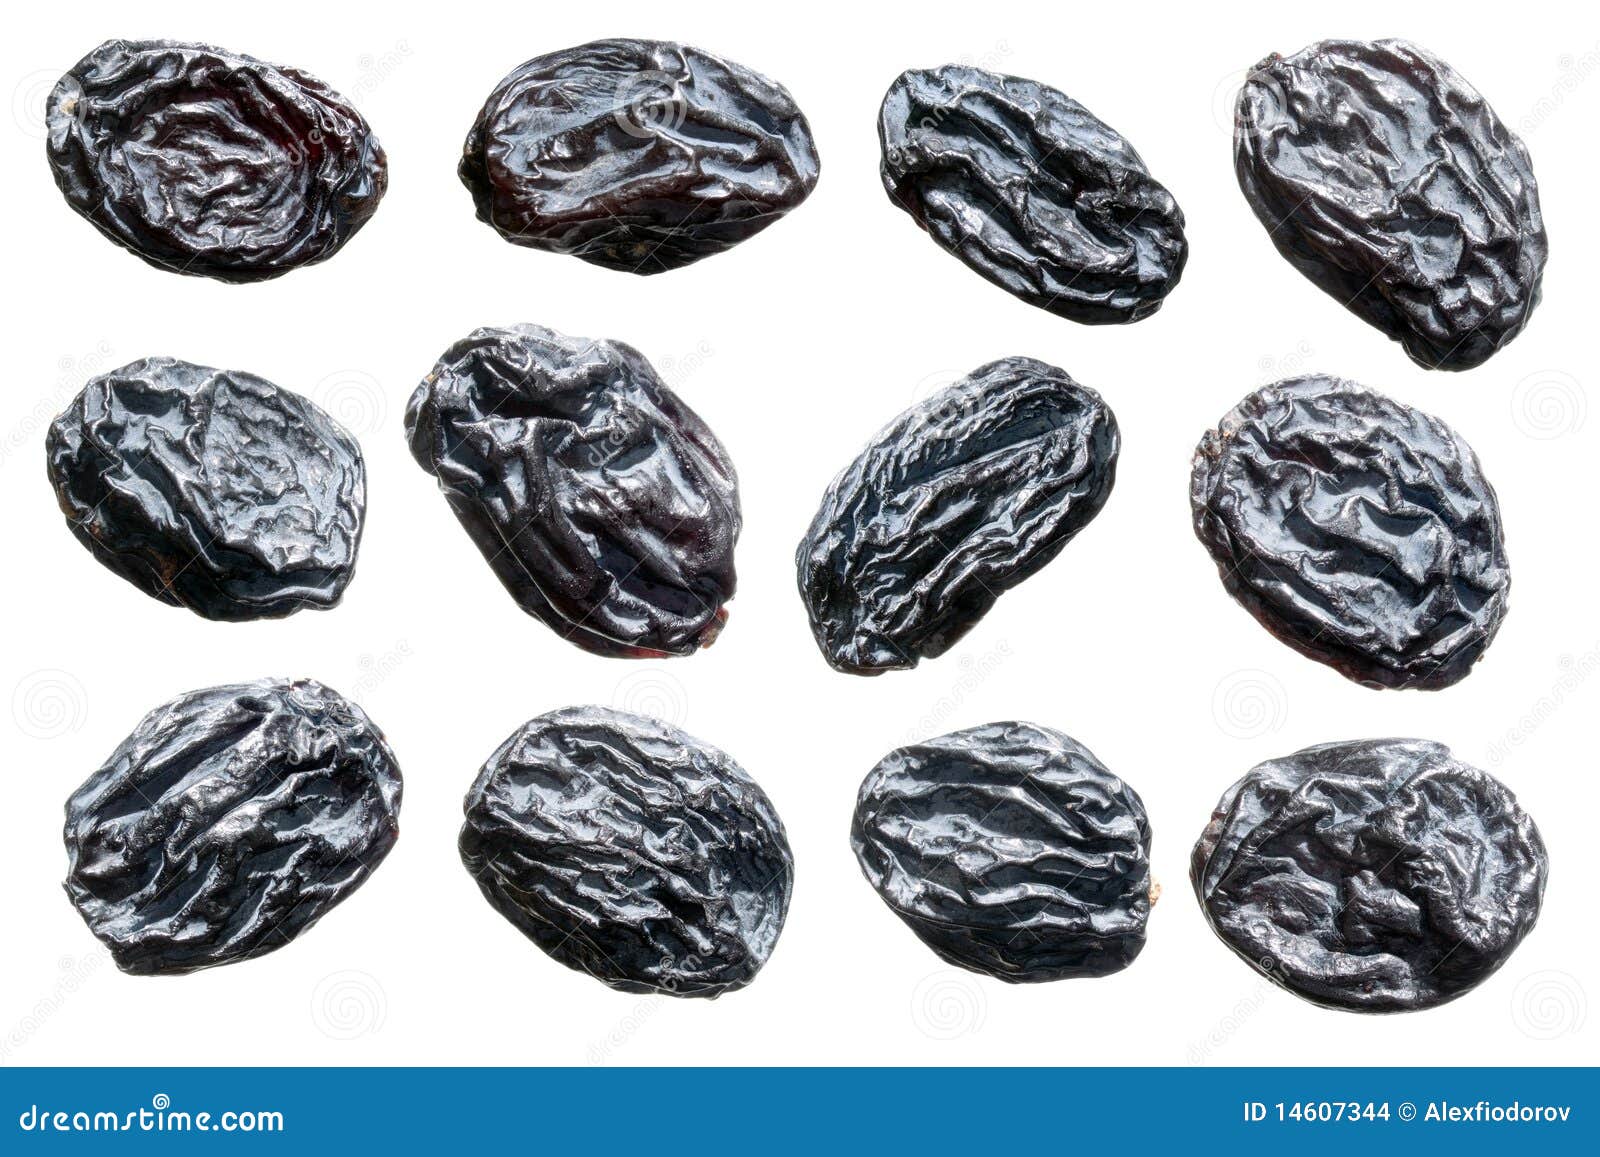 raisins.